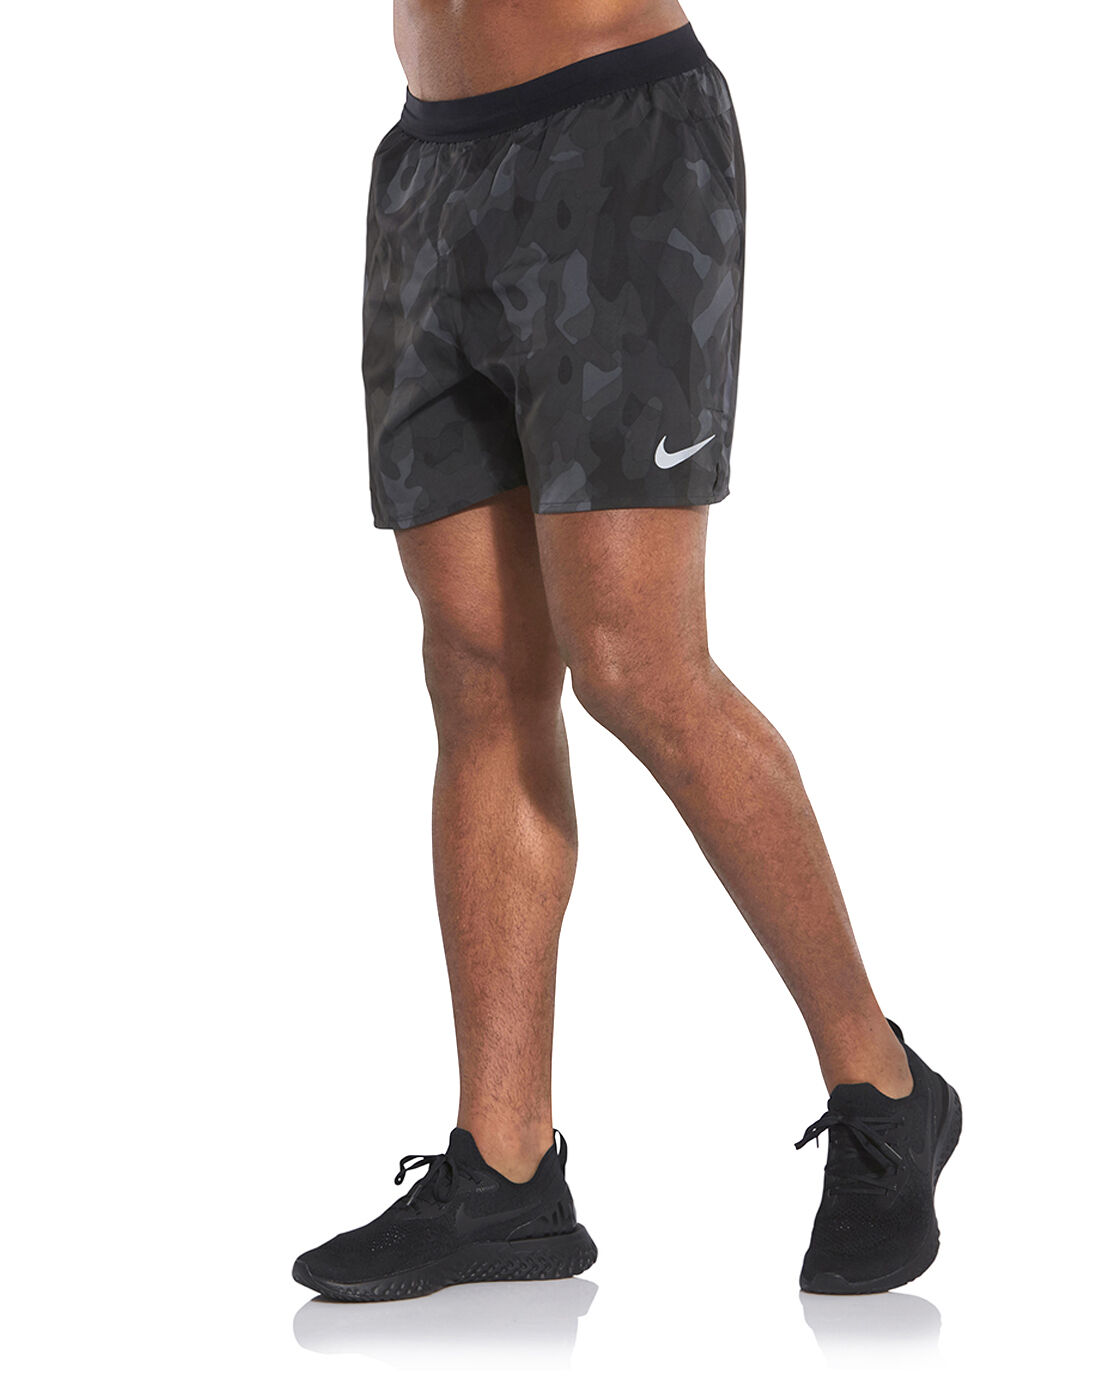 Men's Black Camo Nike Running Shorts 